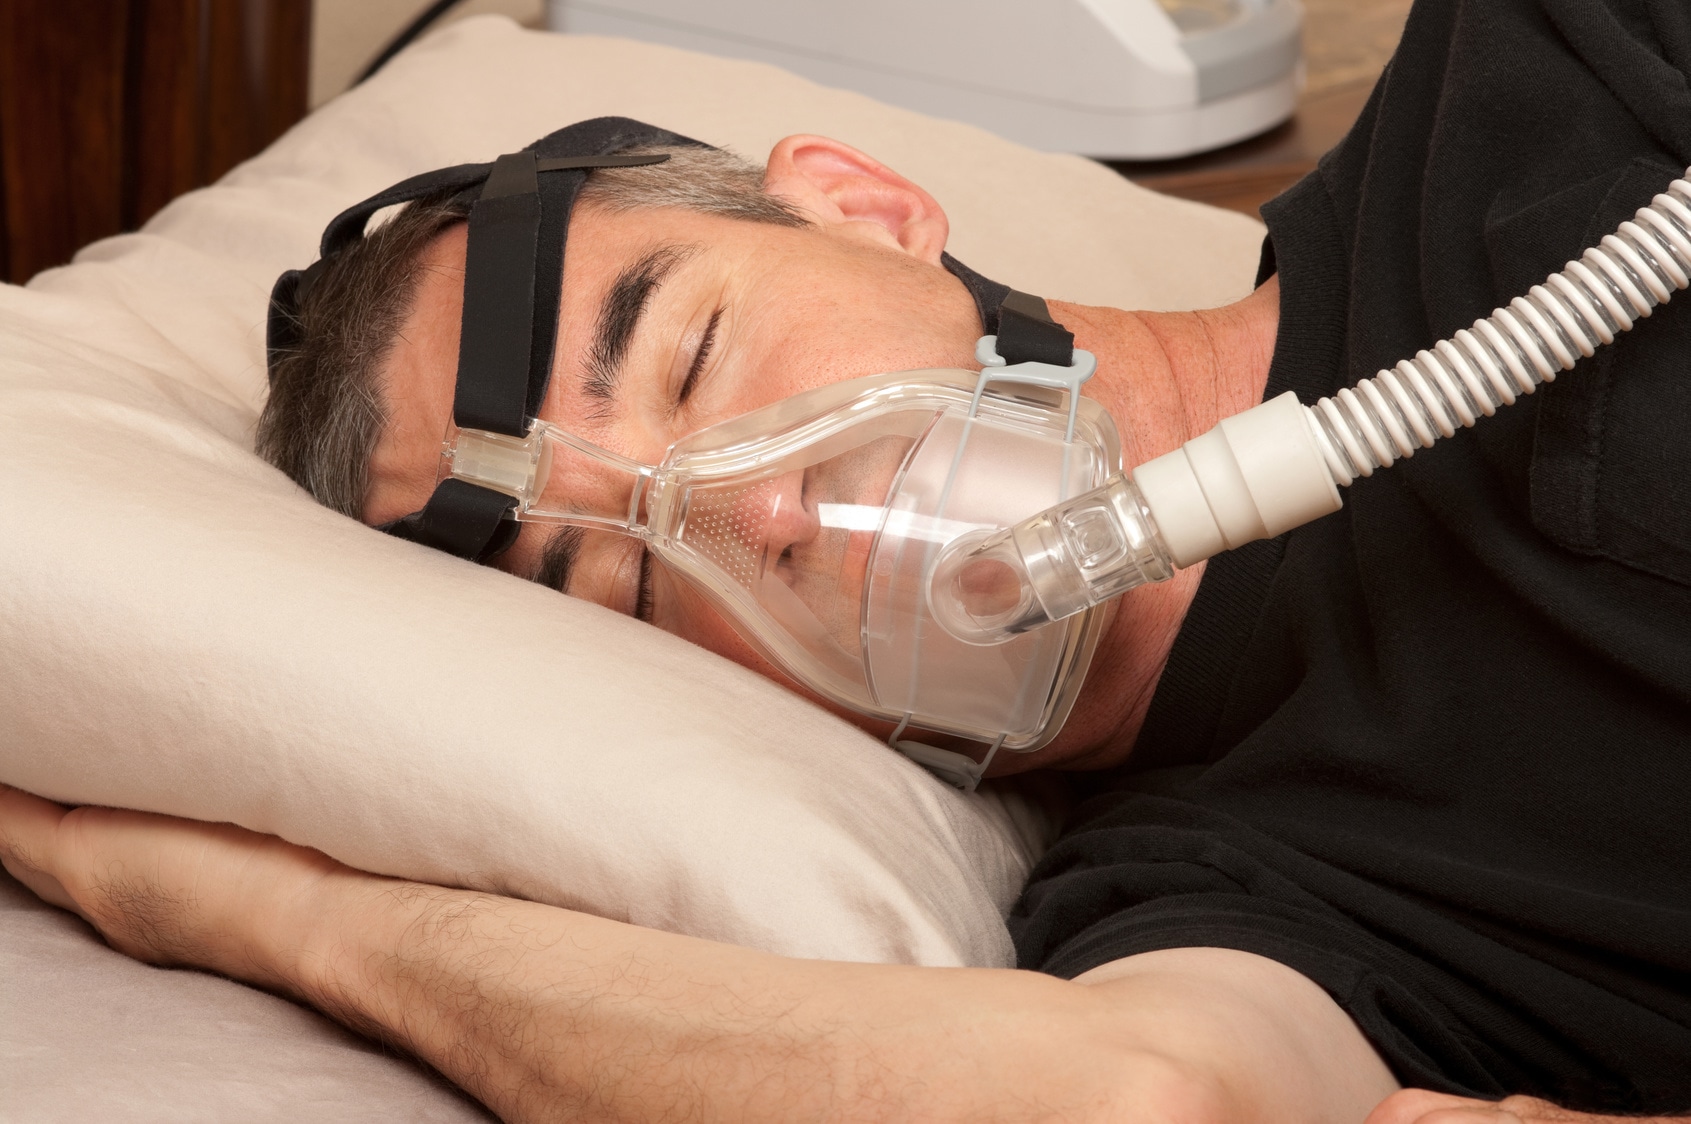 Cómo es el estudio del sueño para diagnosticar la apnea